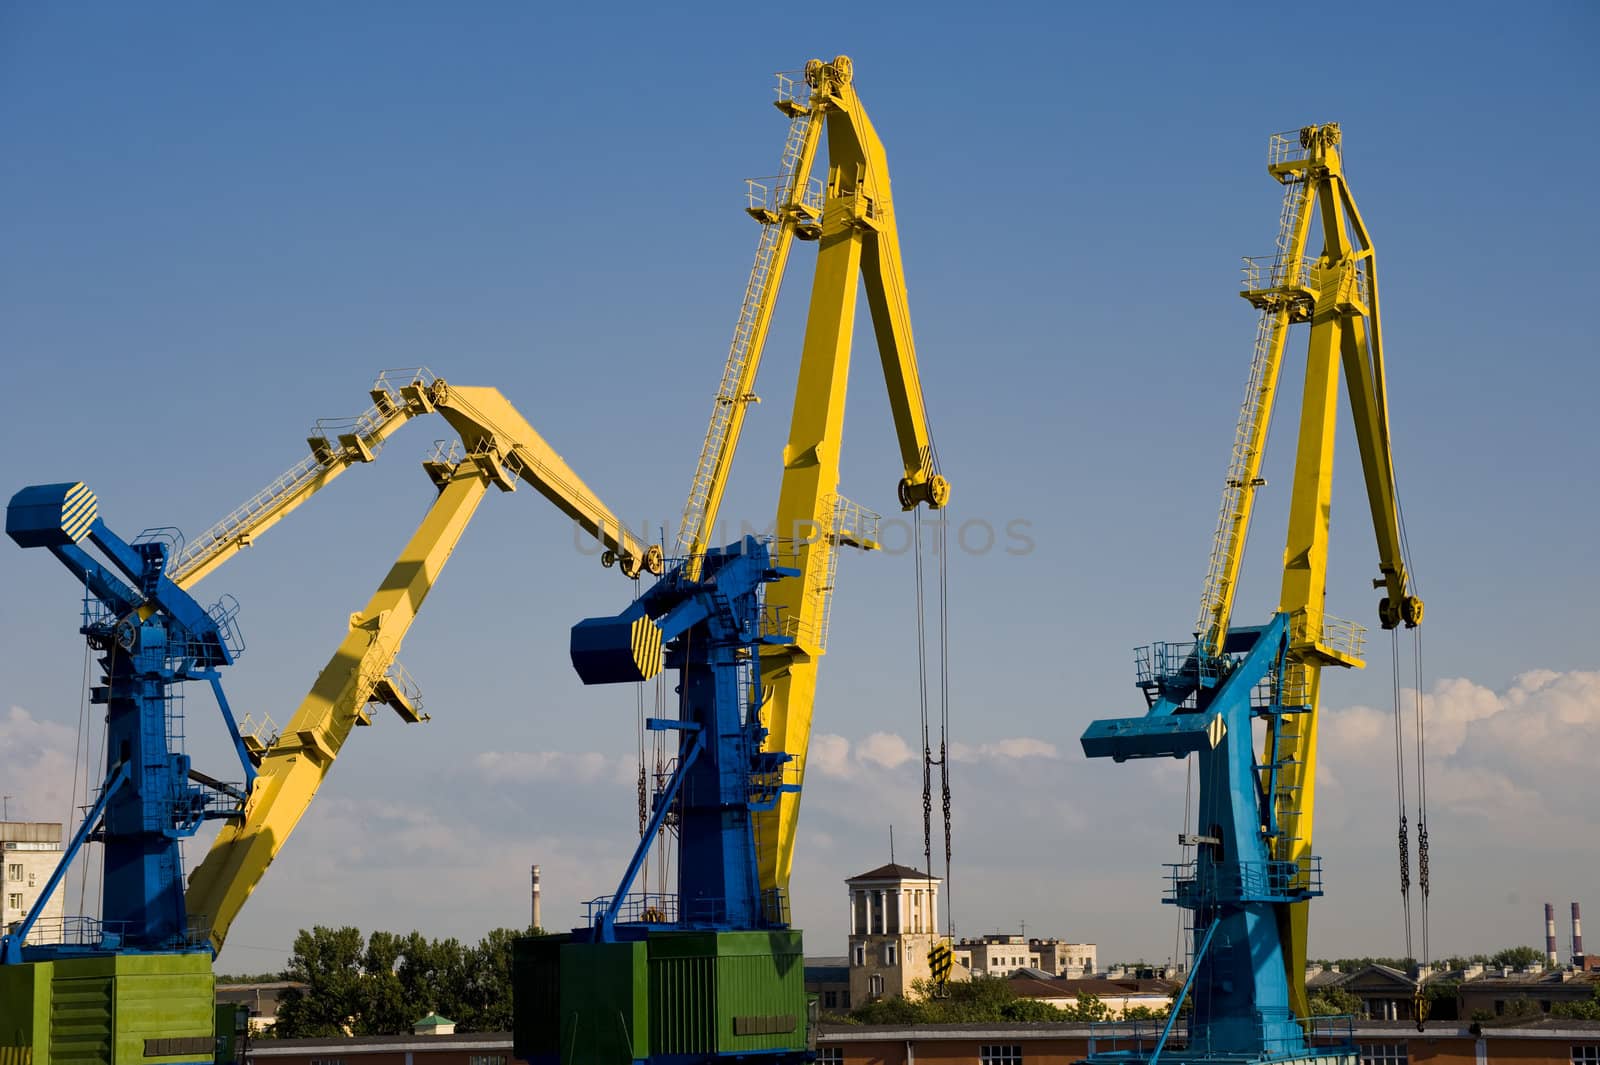 Port cranes inthe cargo port in Sankt Petersburg, Russia